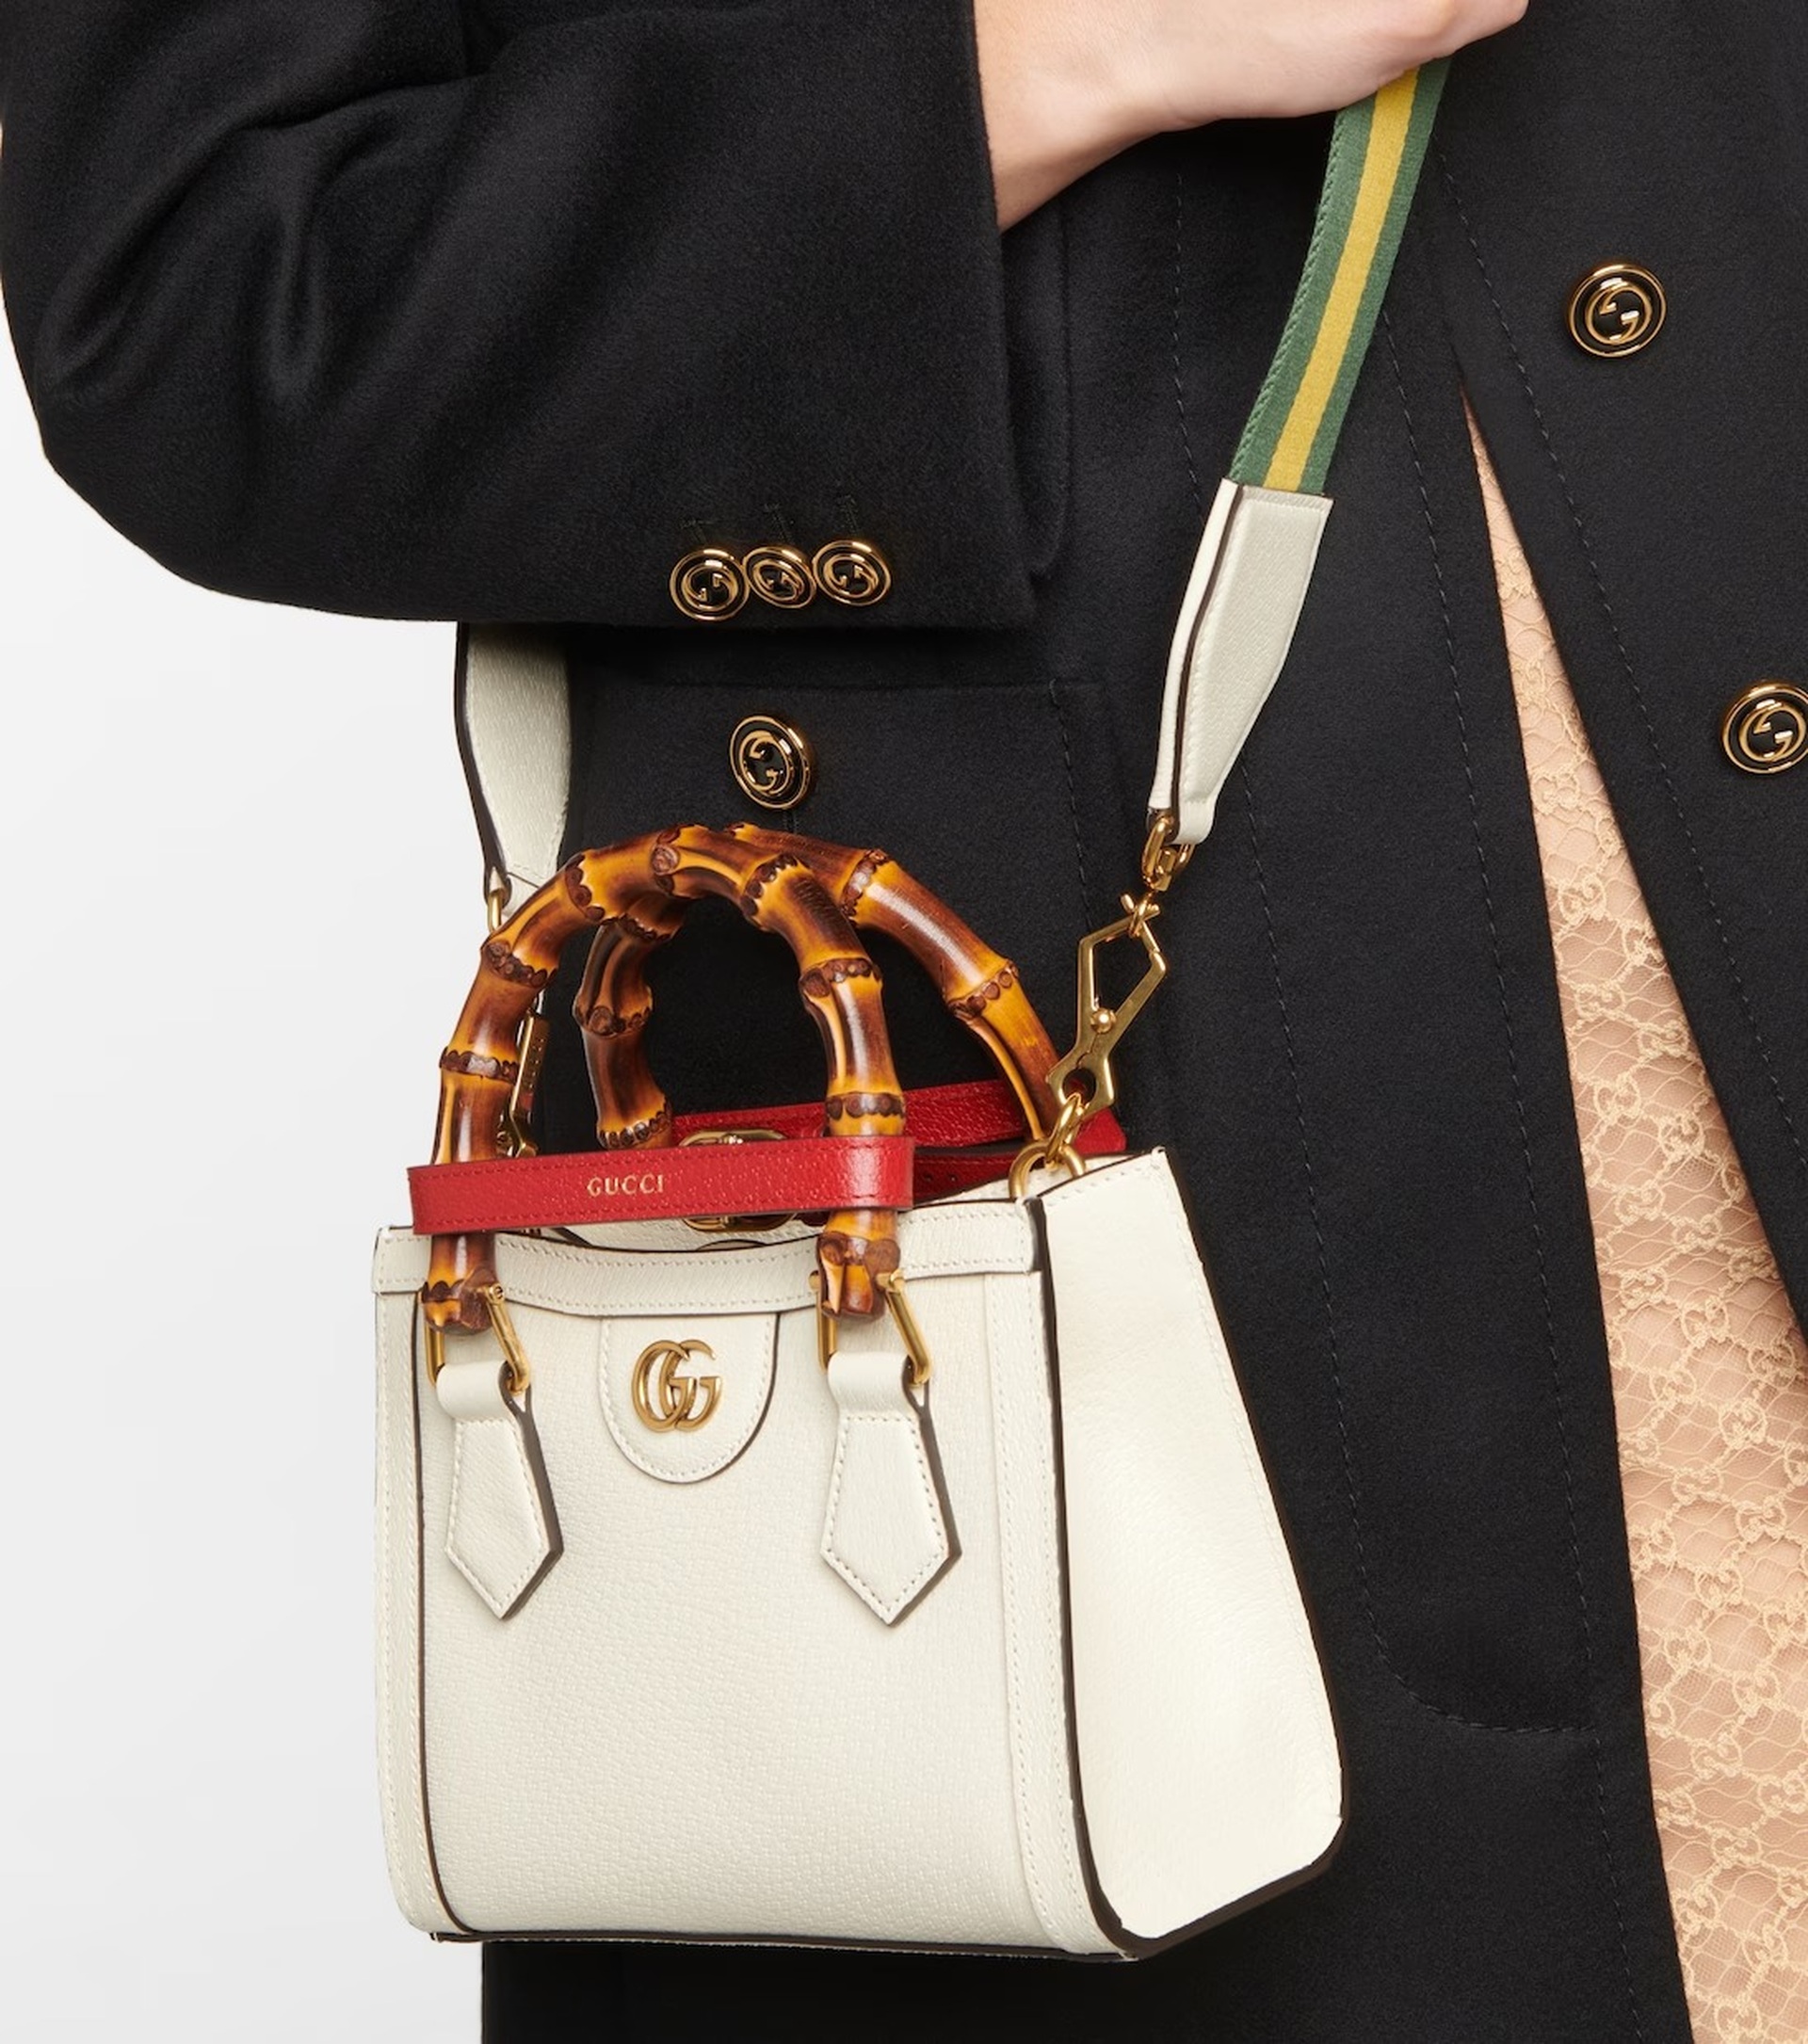 6 mẫu túi xách Gucci không bị lỗi mốt, xứng đáng để đầu tư